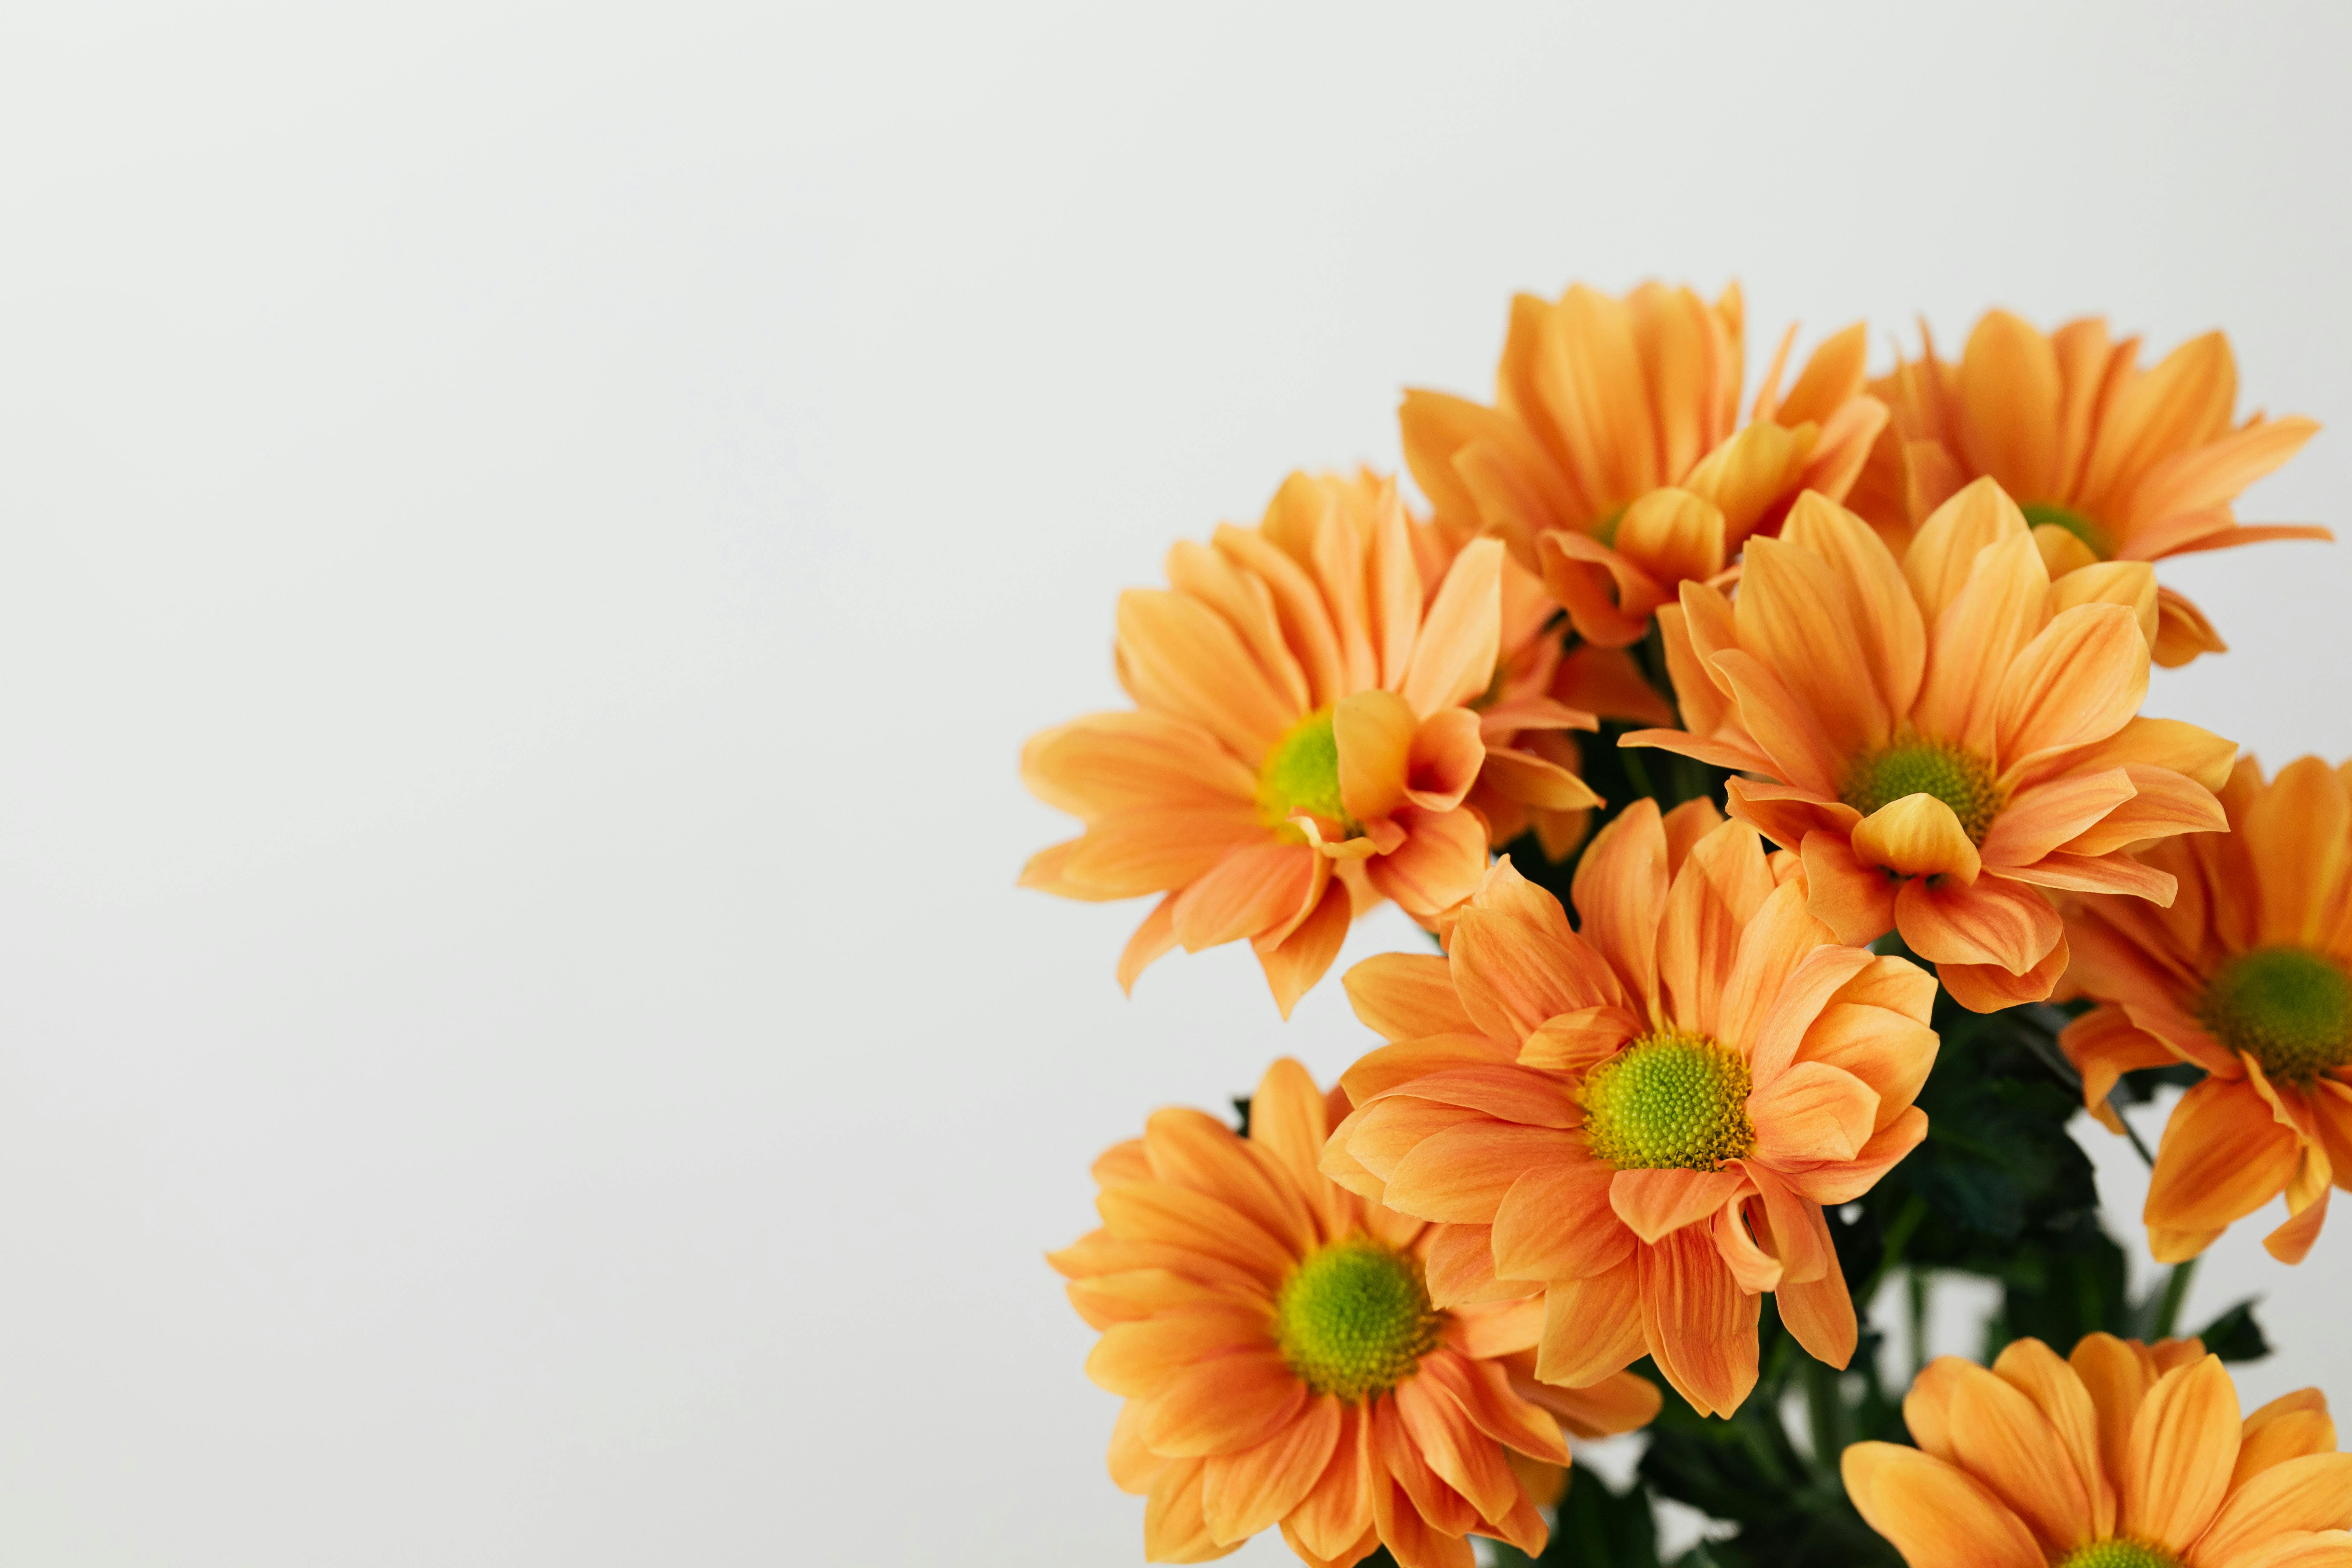 Hình ảnh hoa cam: Khám phá bộ sưu tập những hình ảnh tuyệt đẹp về những bông hoa cam. Từ những bức ảnh tuyệt vời về sắc độc đáo của hoa đến những hình ảnh ghi lại vẻ đẹp thiên nhiên đầy màu sắc, bạn sẽ không thể rời mắt khỏi chúng.